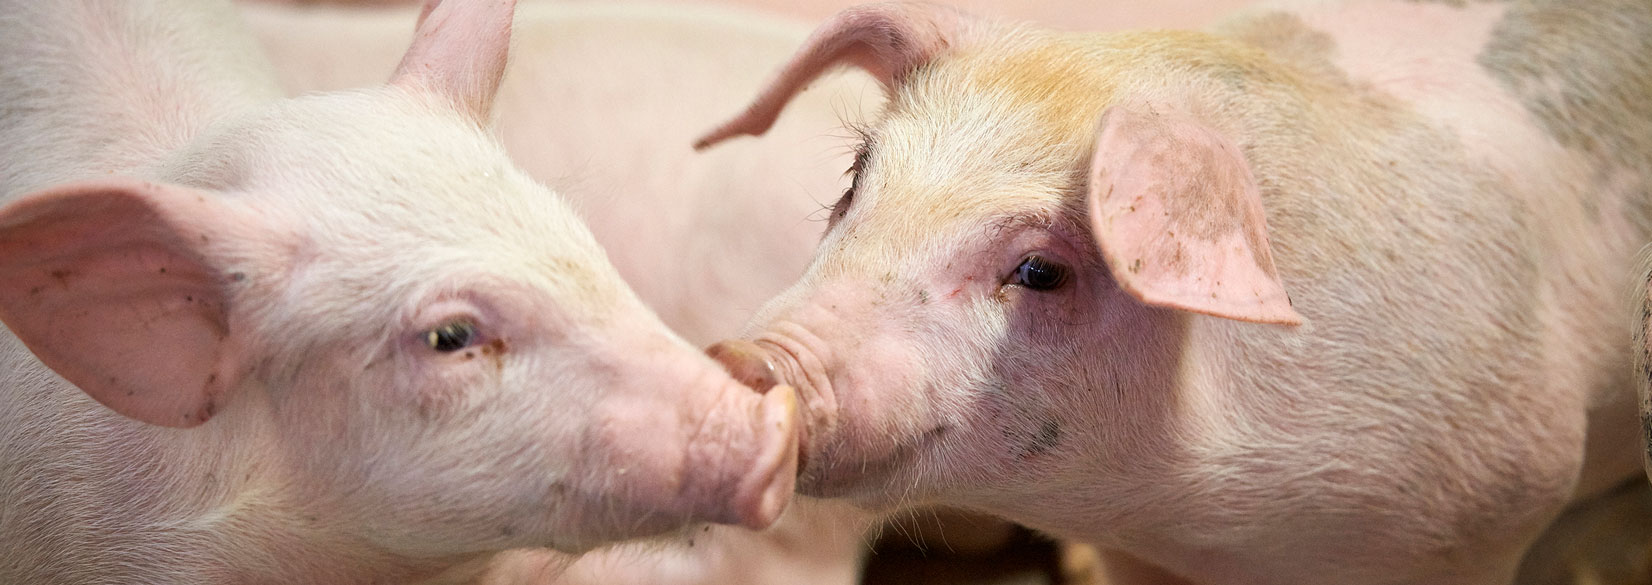 SEGES Svineproduktion har det faglige ansvar for forsøgs- og udviklingsopgaver vedrørende den levende gris samt ansvaret for formidling af den indsamlede viden.